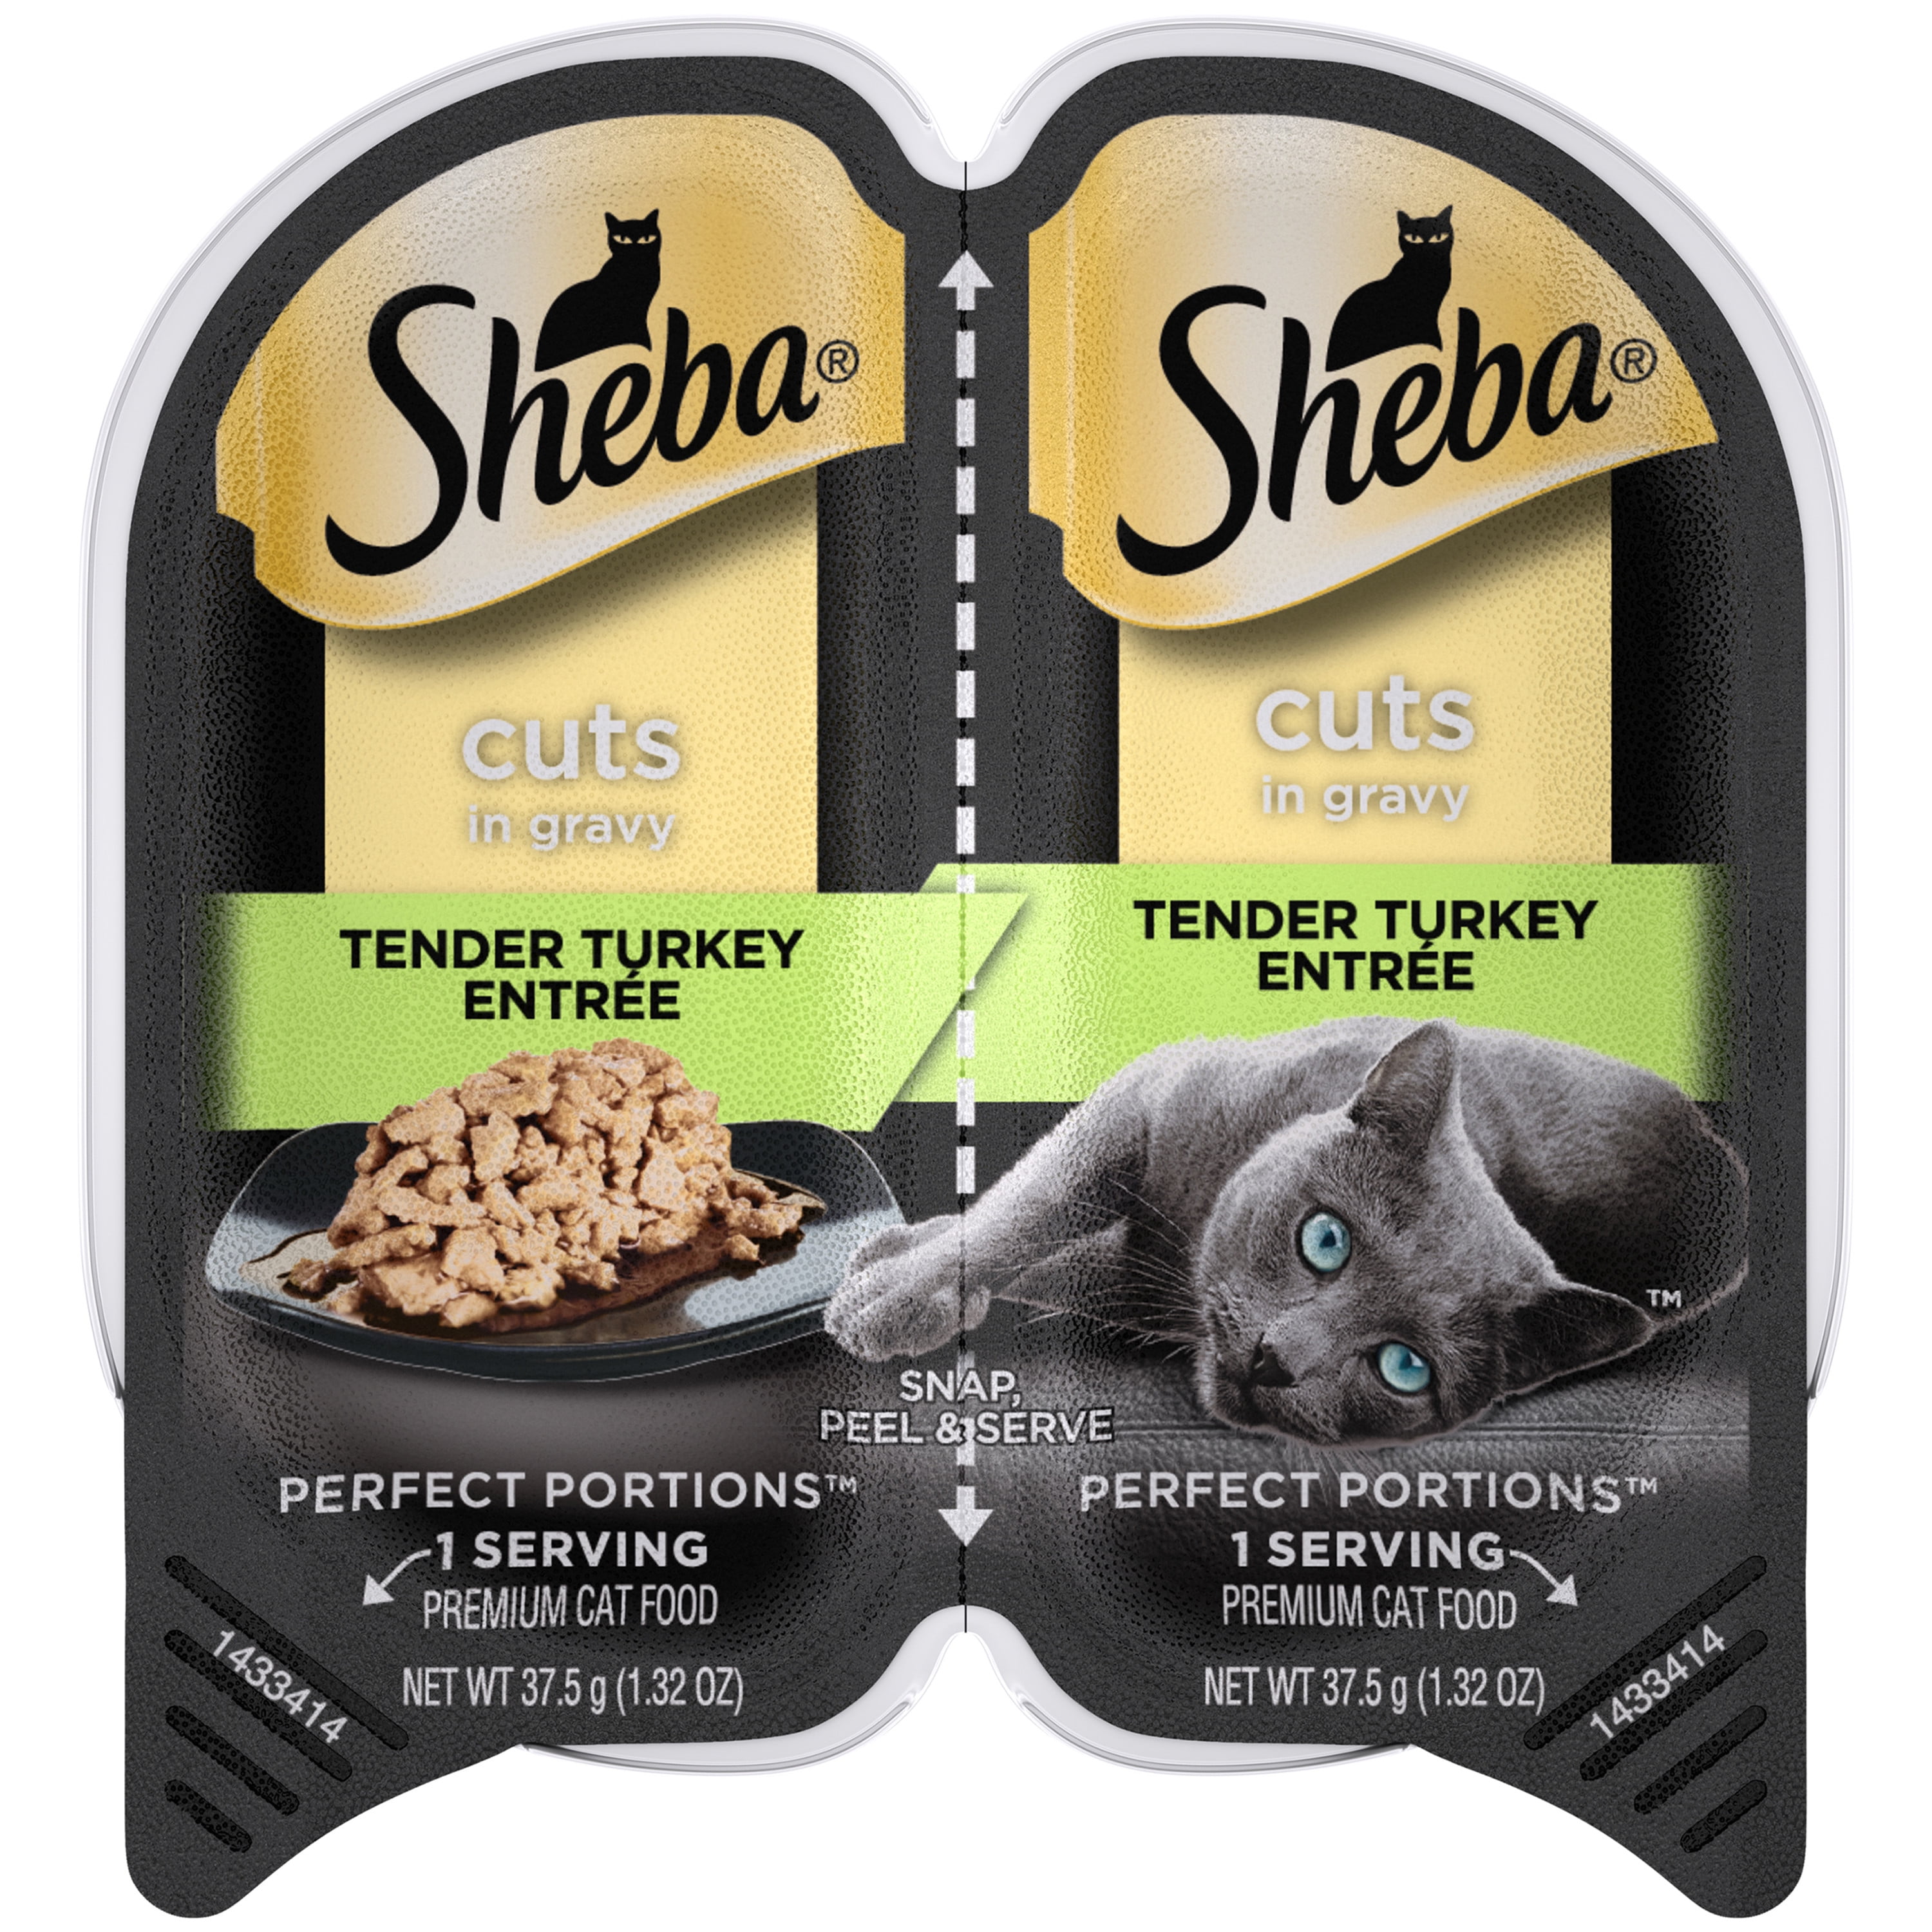 SHEBA Wet Cat Food Cuts in Gravy, Tender Turkey Entree, (12) 2.6 oz